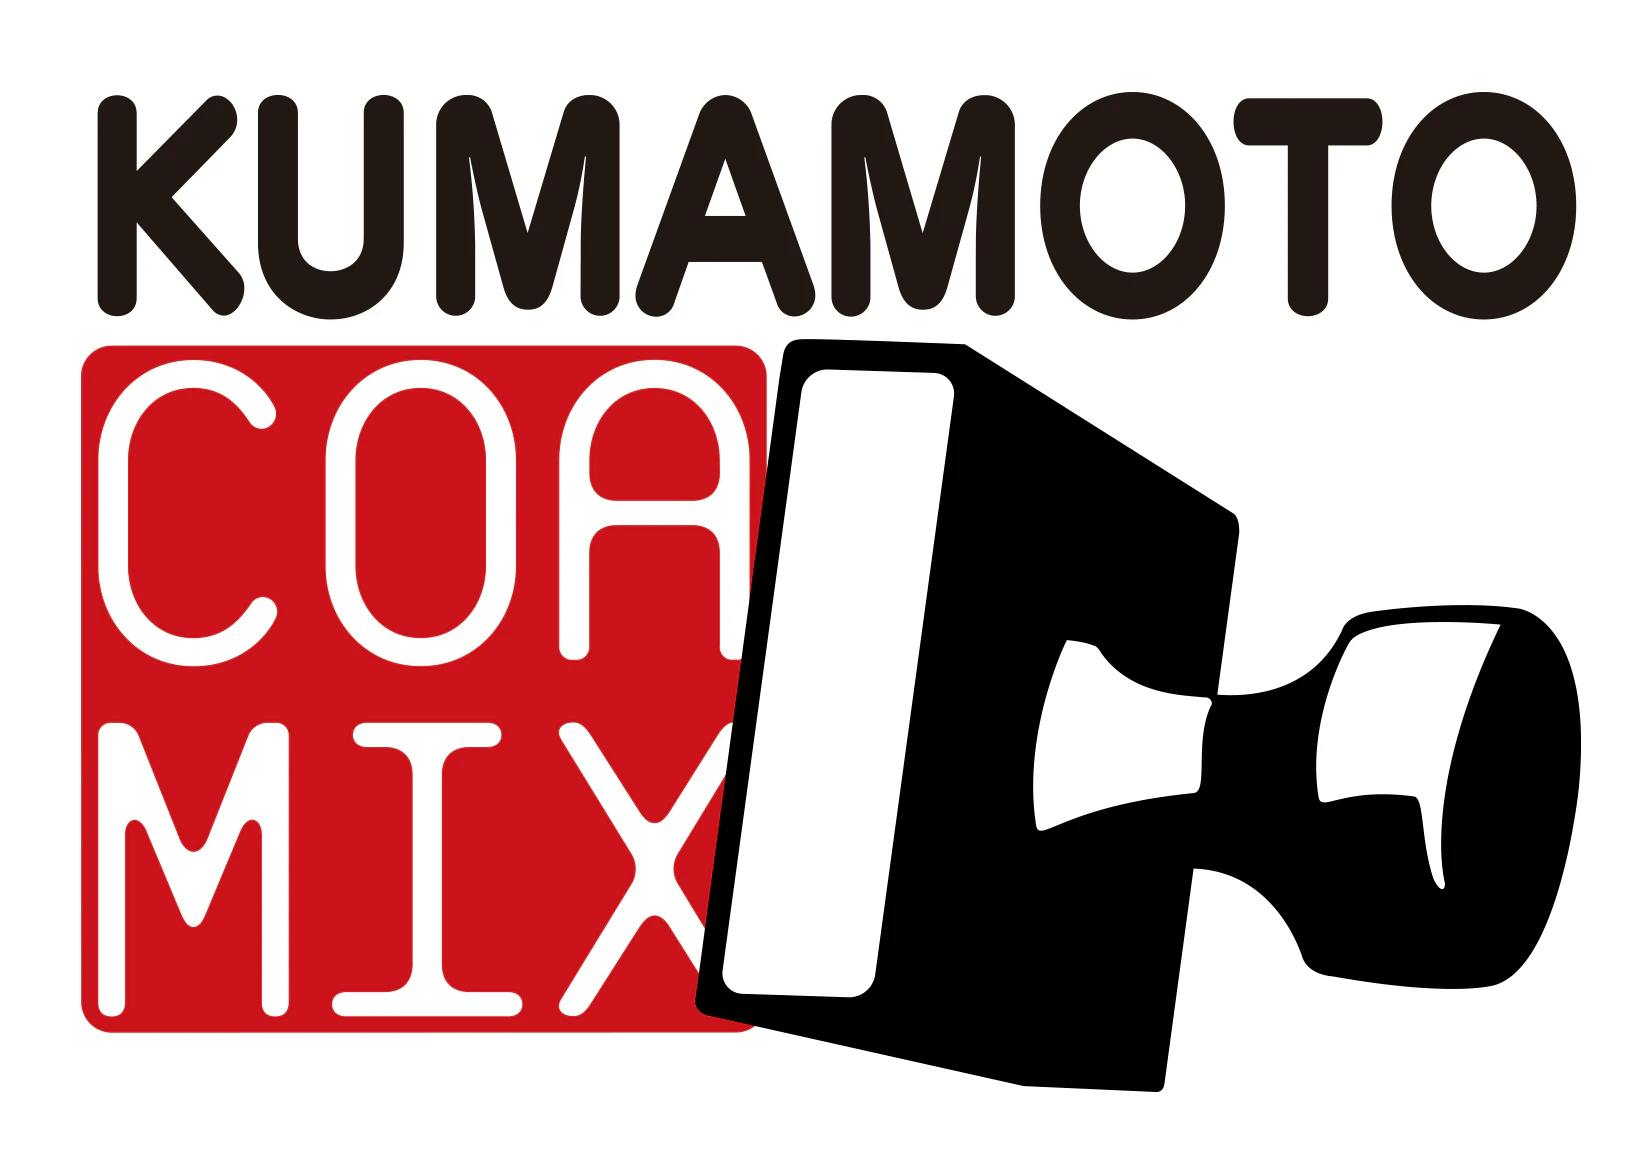 कुमामोटो कोर मिक्स की आधिकारिक वेबसाइट के लिए यहां क्लिक करें!